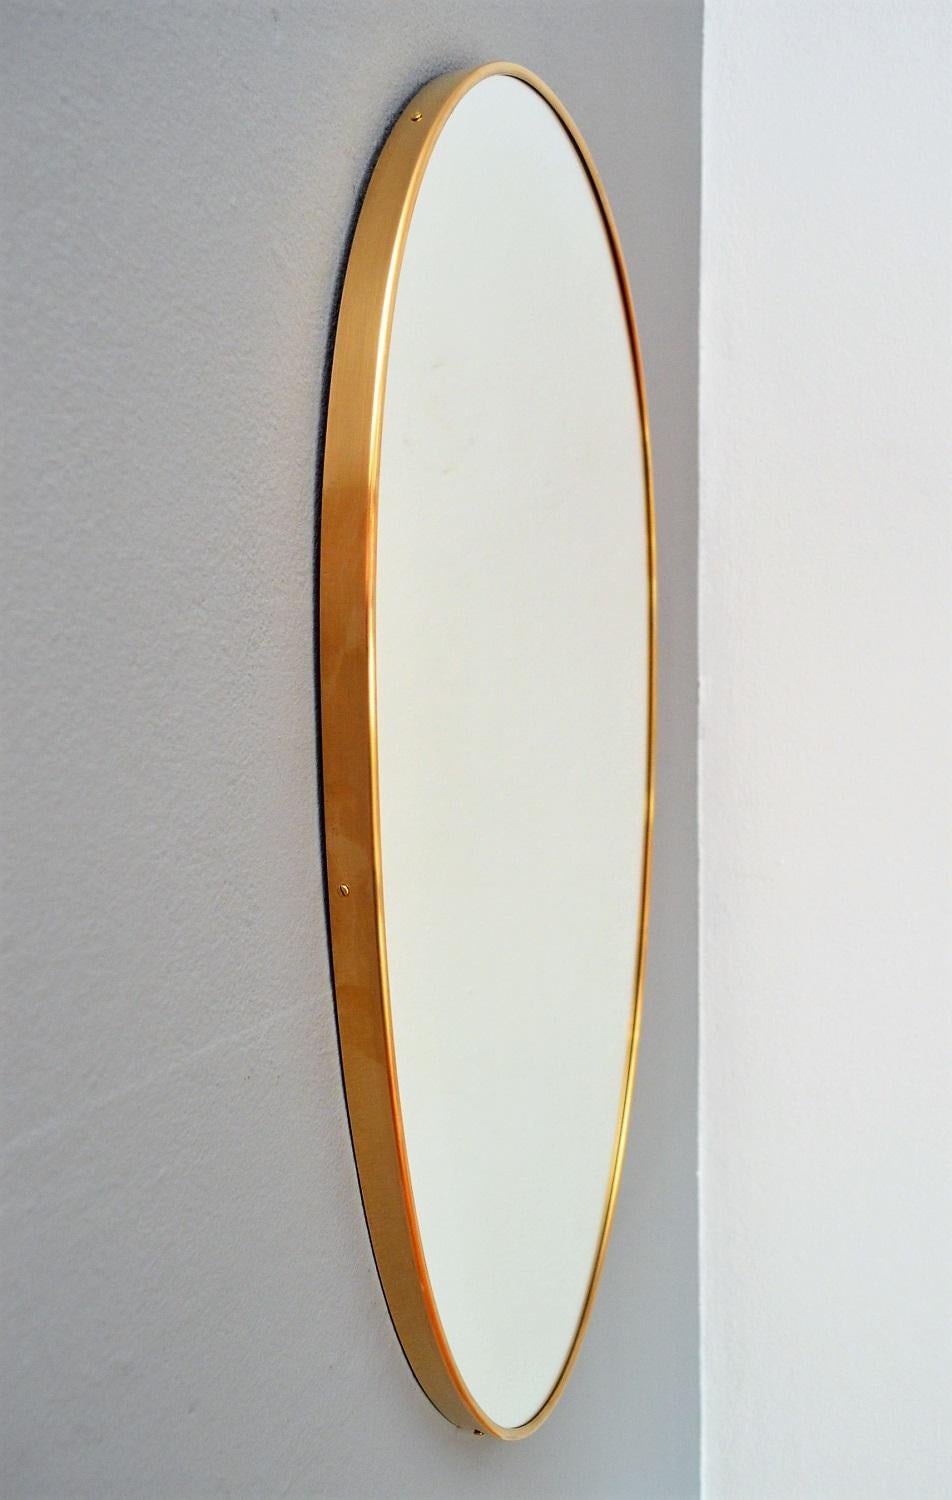 Mid-20th Century Italian Midcentury Oval Brass Wall Mirror, 1950s